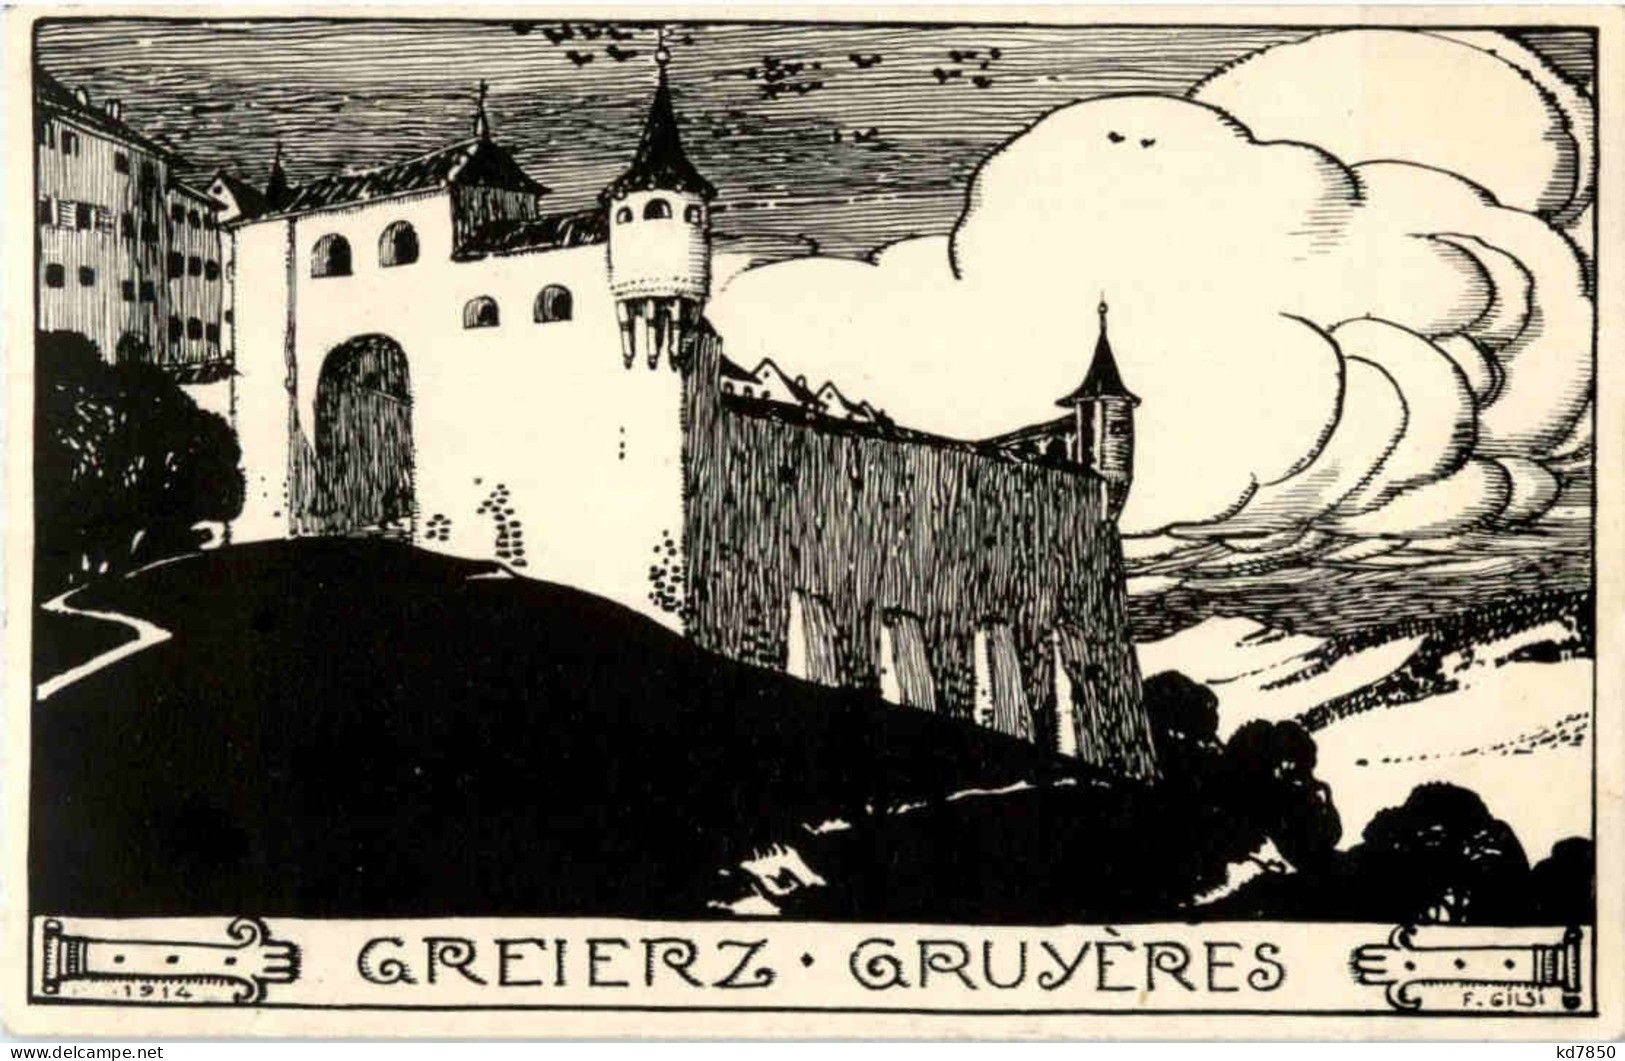 Gruyeres - Greierz - Gruyères